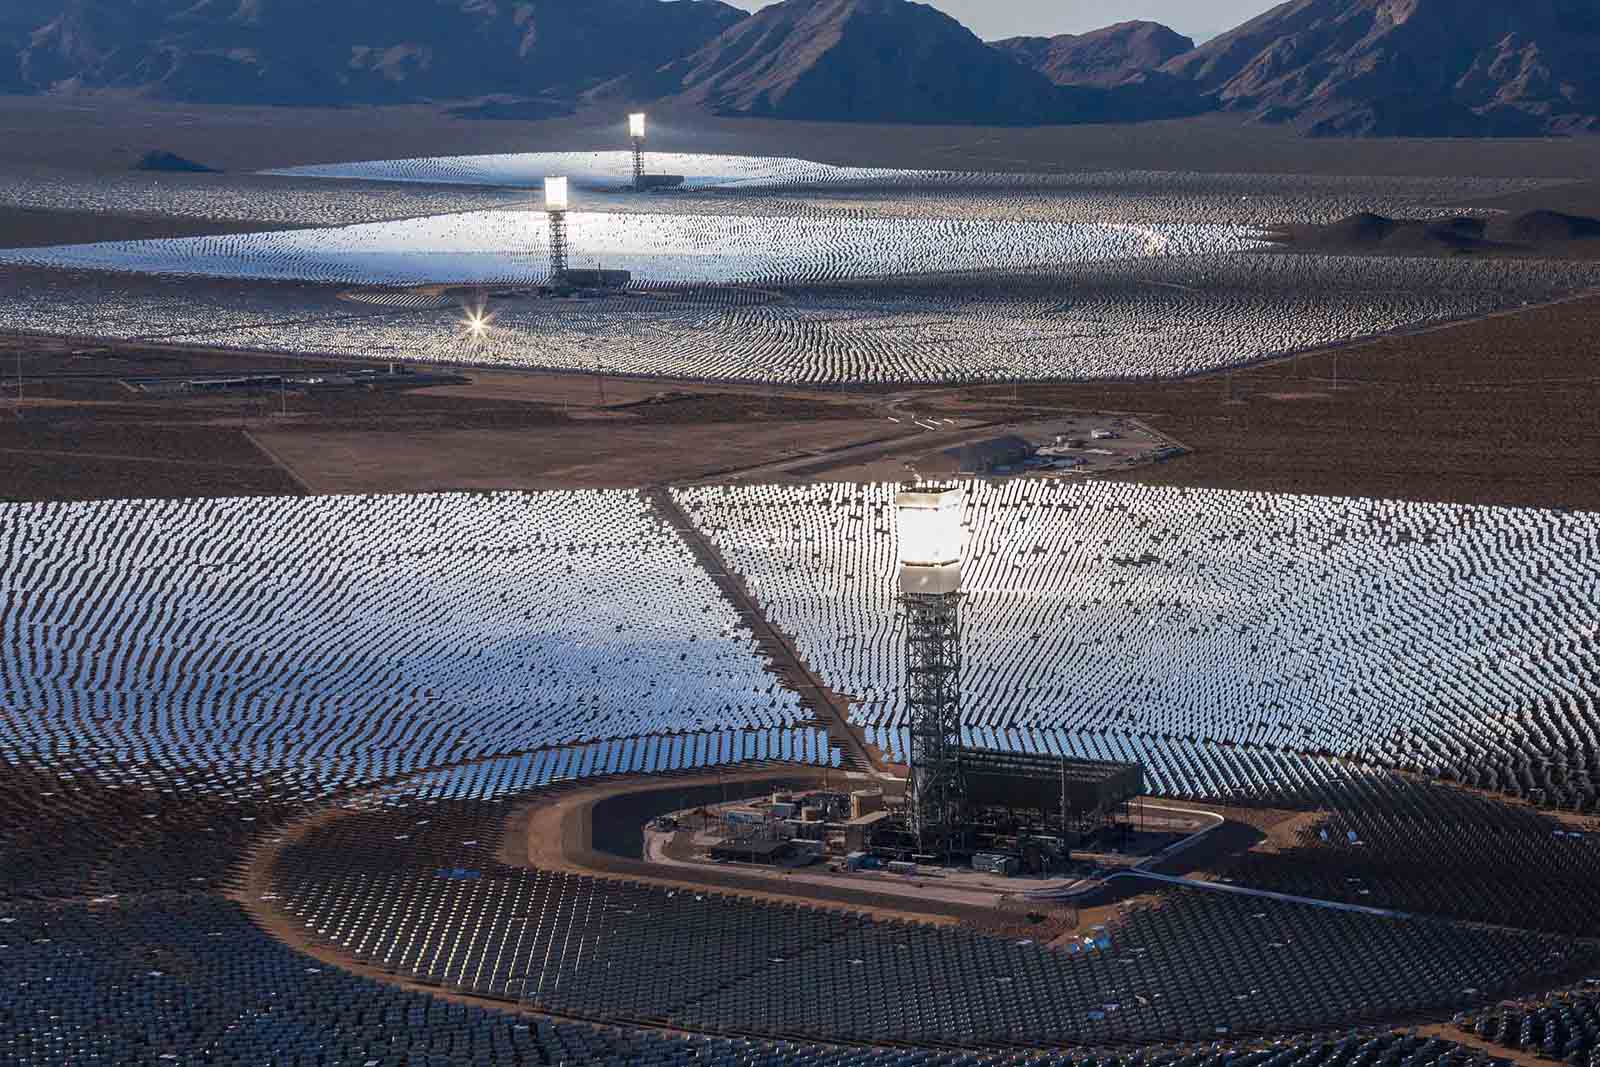 מתקן להפקת אנרגיה סולרית בניפטון שבקליפורניה(צילום: Brett Beyer / Shutterstock.com)